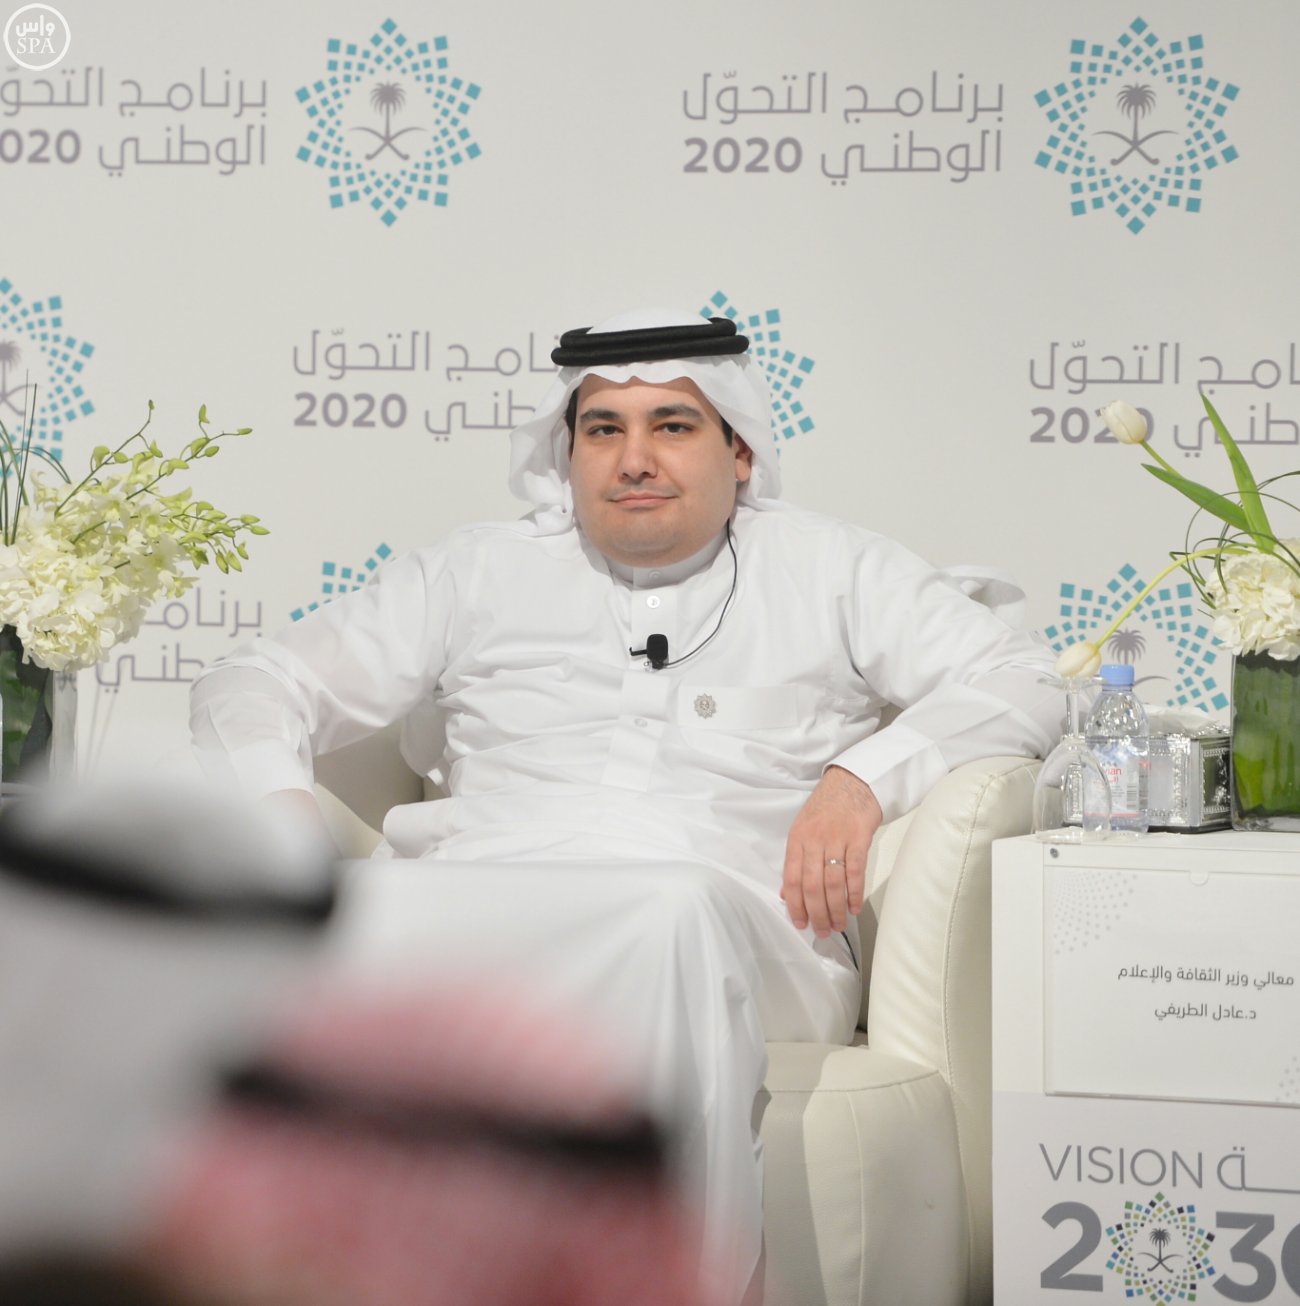 وزير الإعلام يُناقش البرامج والخطط المُستقبليّة ضمن #رؤية_السعودية_2030